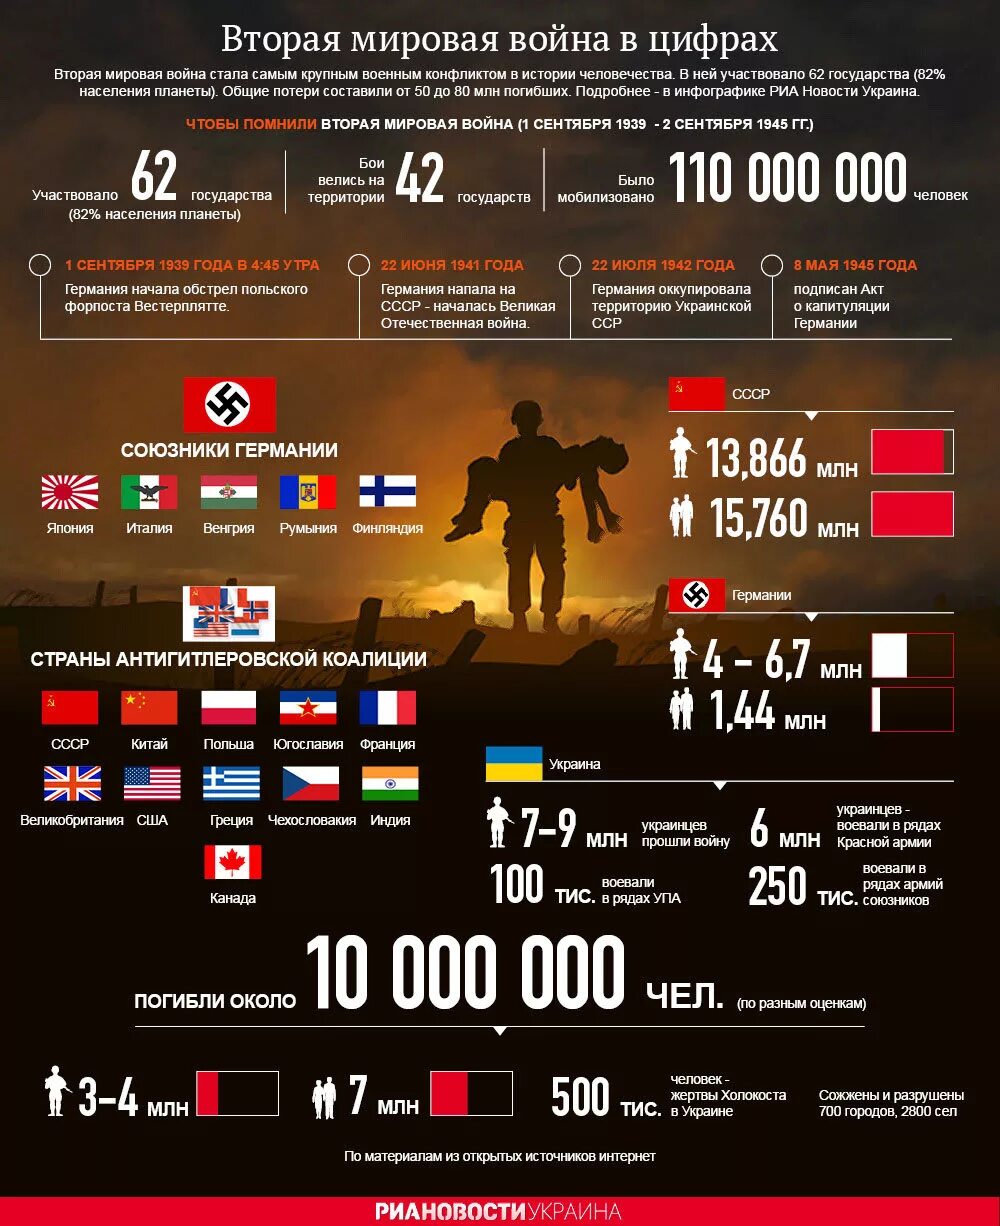 Сколько стран участвовало в войне. Инфографика потери во второй мировой войне. Инфографика пр второй мировой войне.